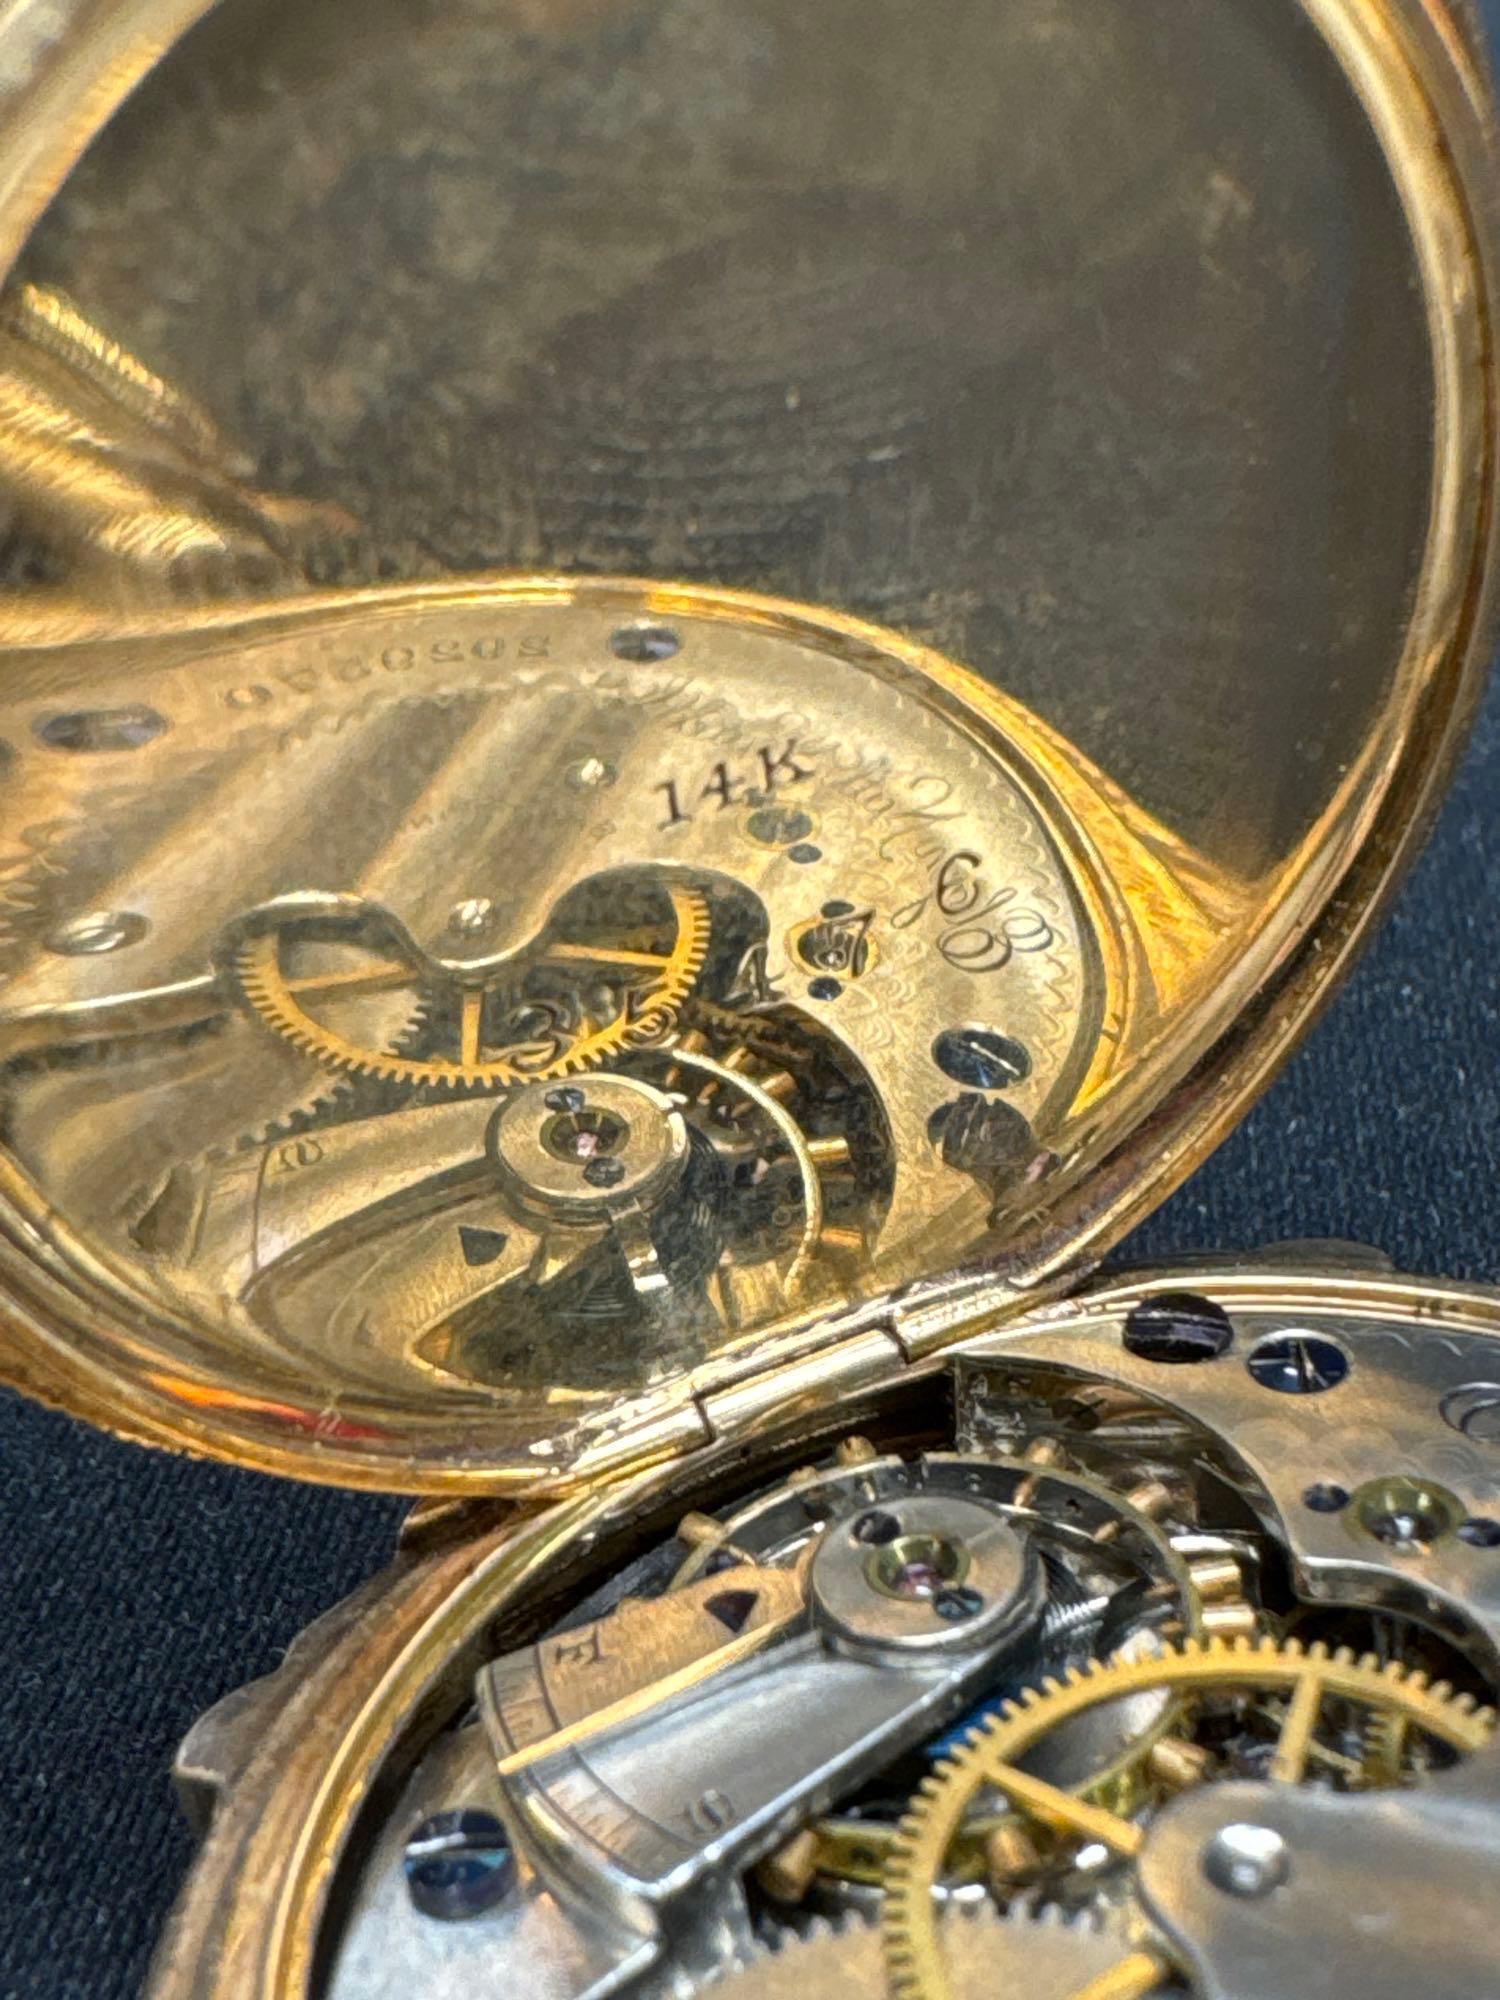 14kt Gold Elgin Pocket Watch 60.82 Grams